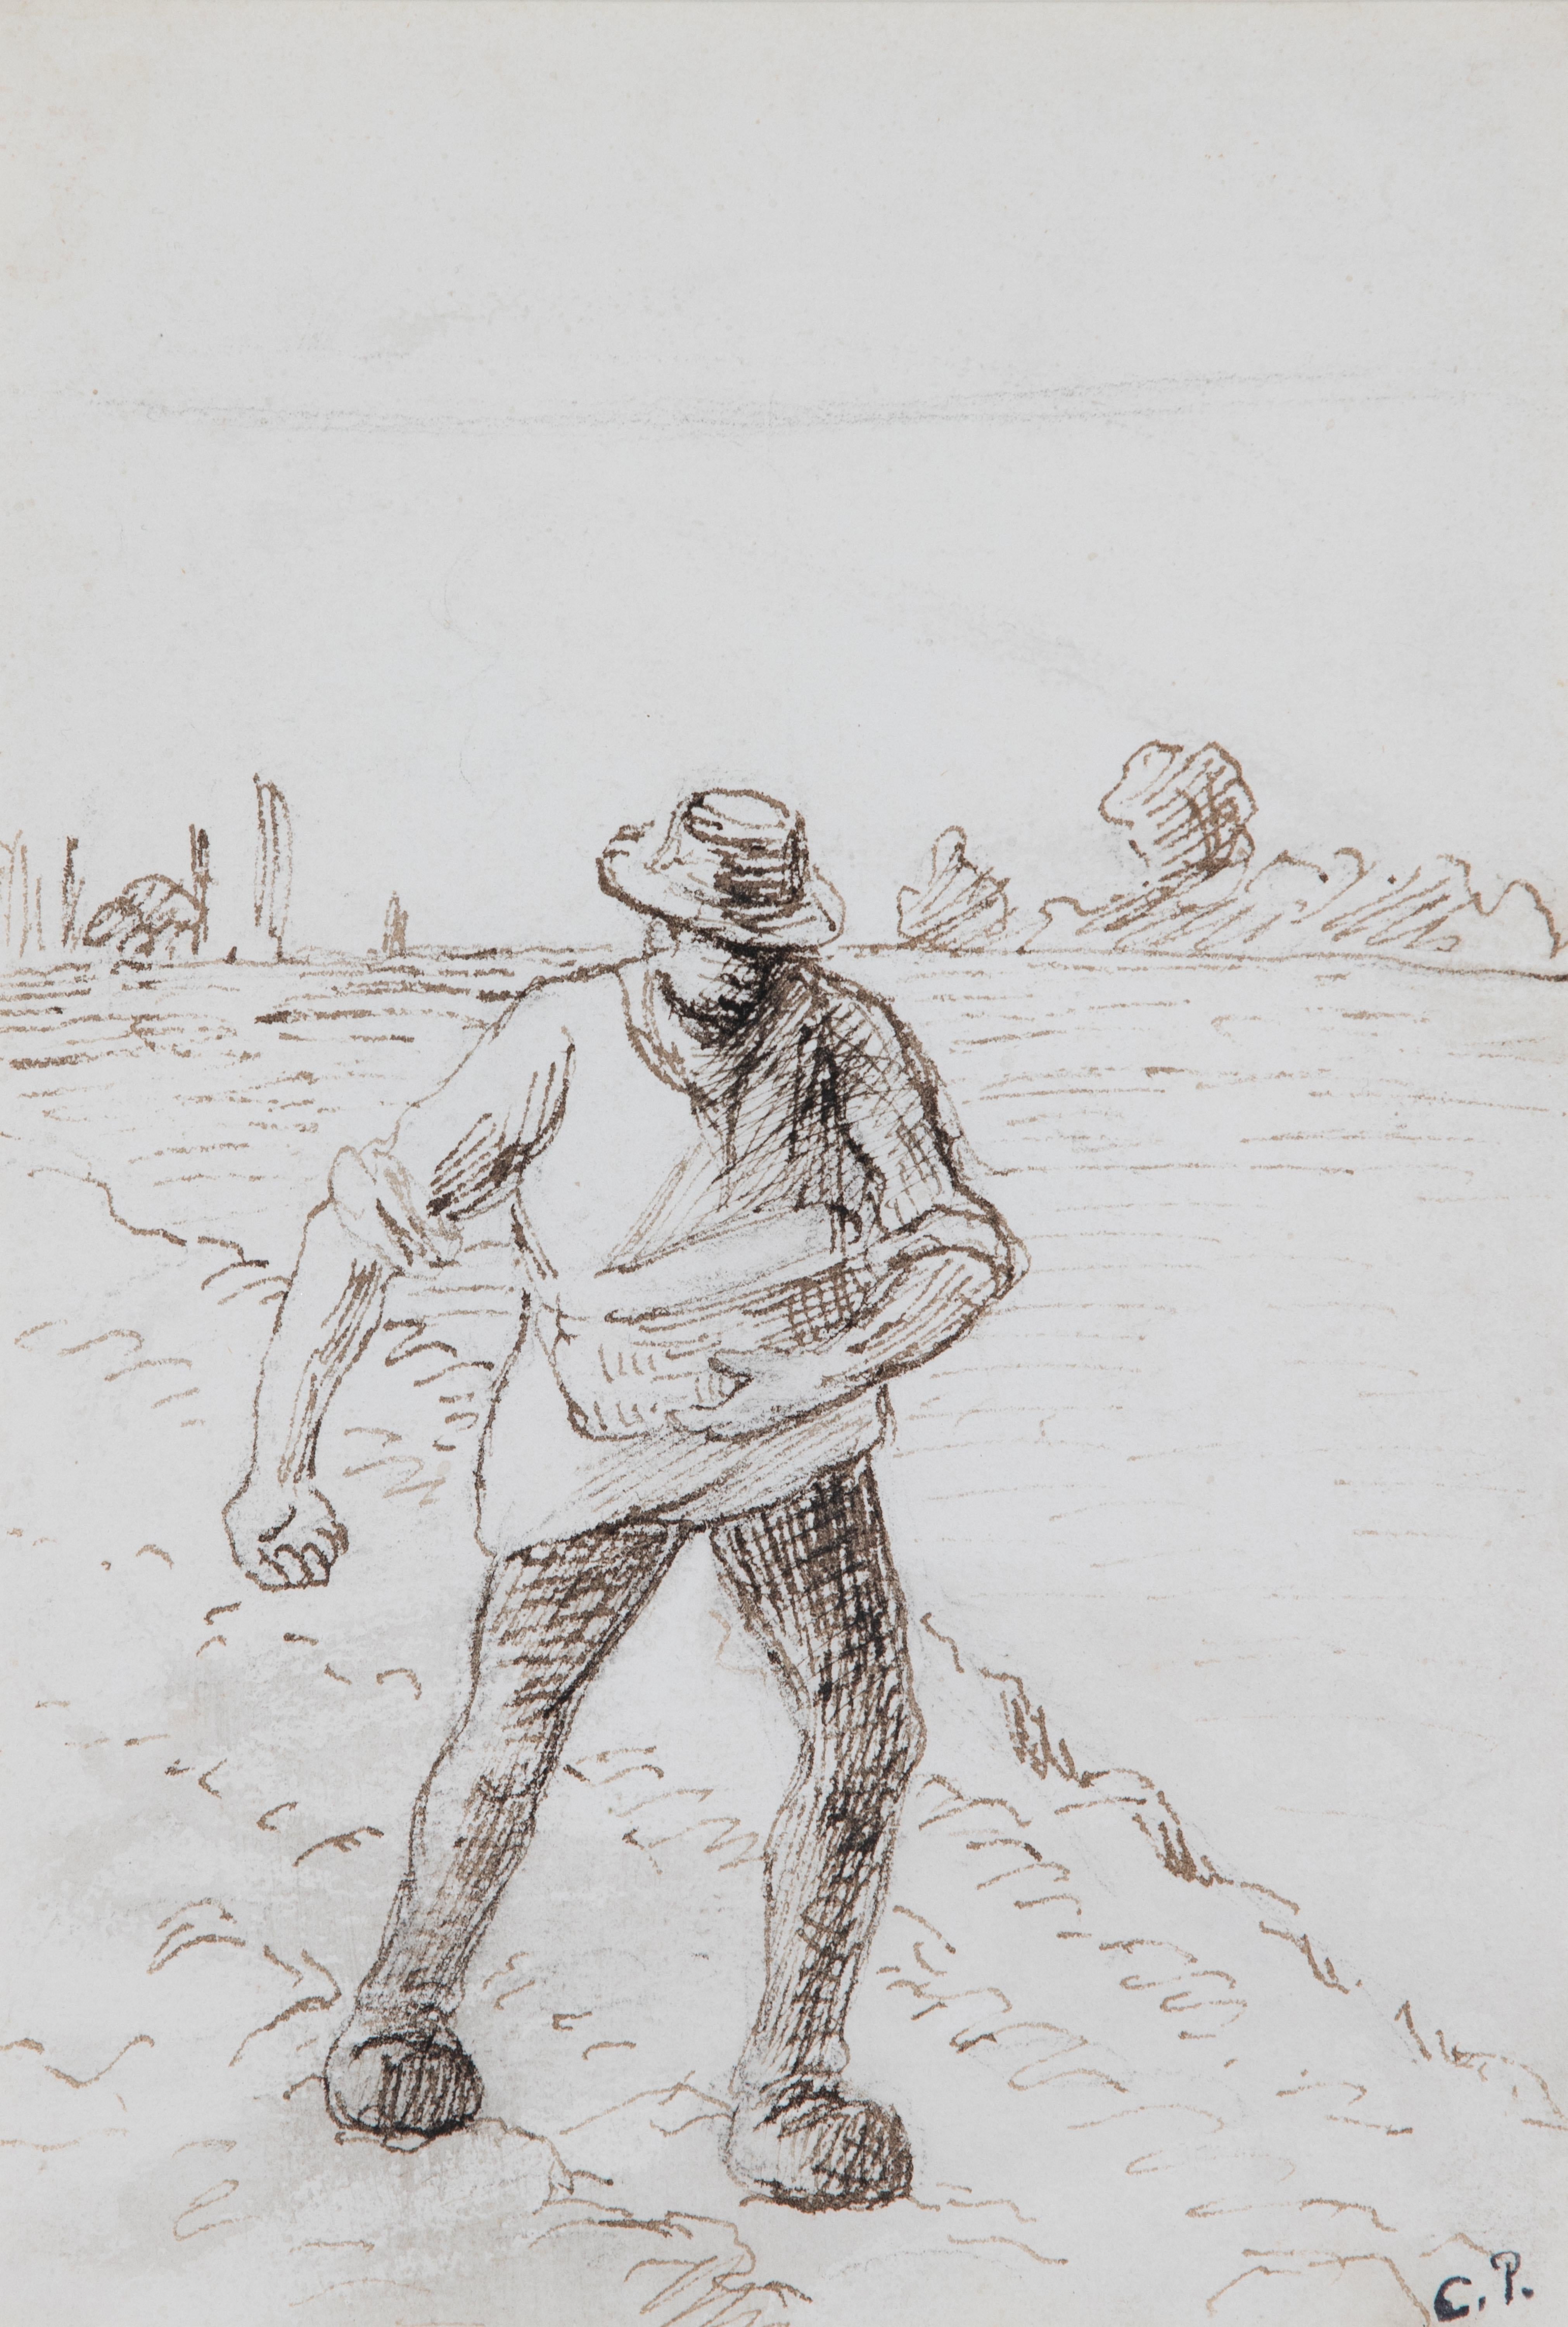 Der Sämann von Camille Pissarro (1830-1903)
Tinte auf Papier
23 x 16 cm (9 x 6 ⁵/₈ Zoll)
Rechts unten gestempelt, C.P. 

Dieses Werk wird von einem Echtheitszertifikat von Dr. Joachim Pissarro begleitet und wird in den kommenden Catalogue Raisonné